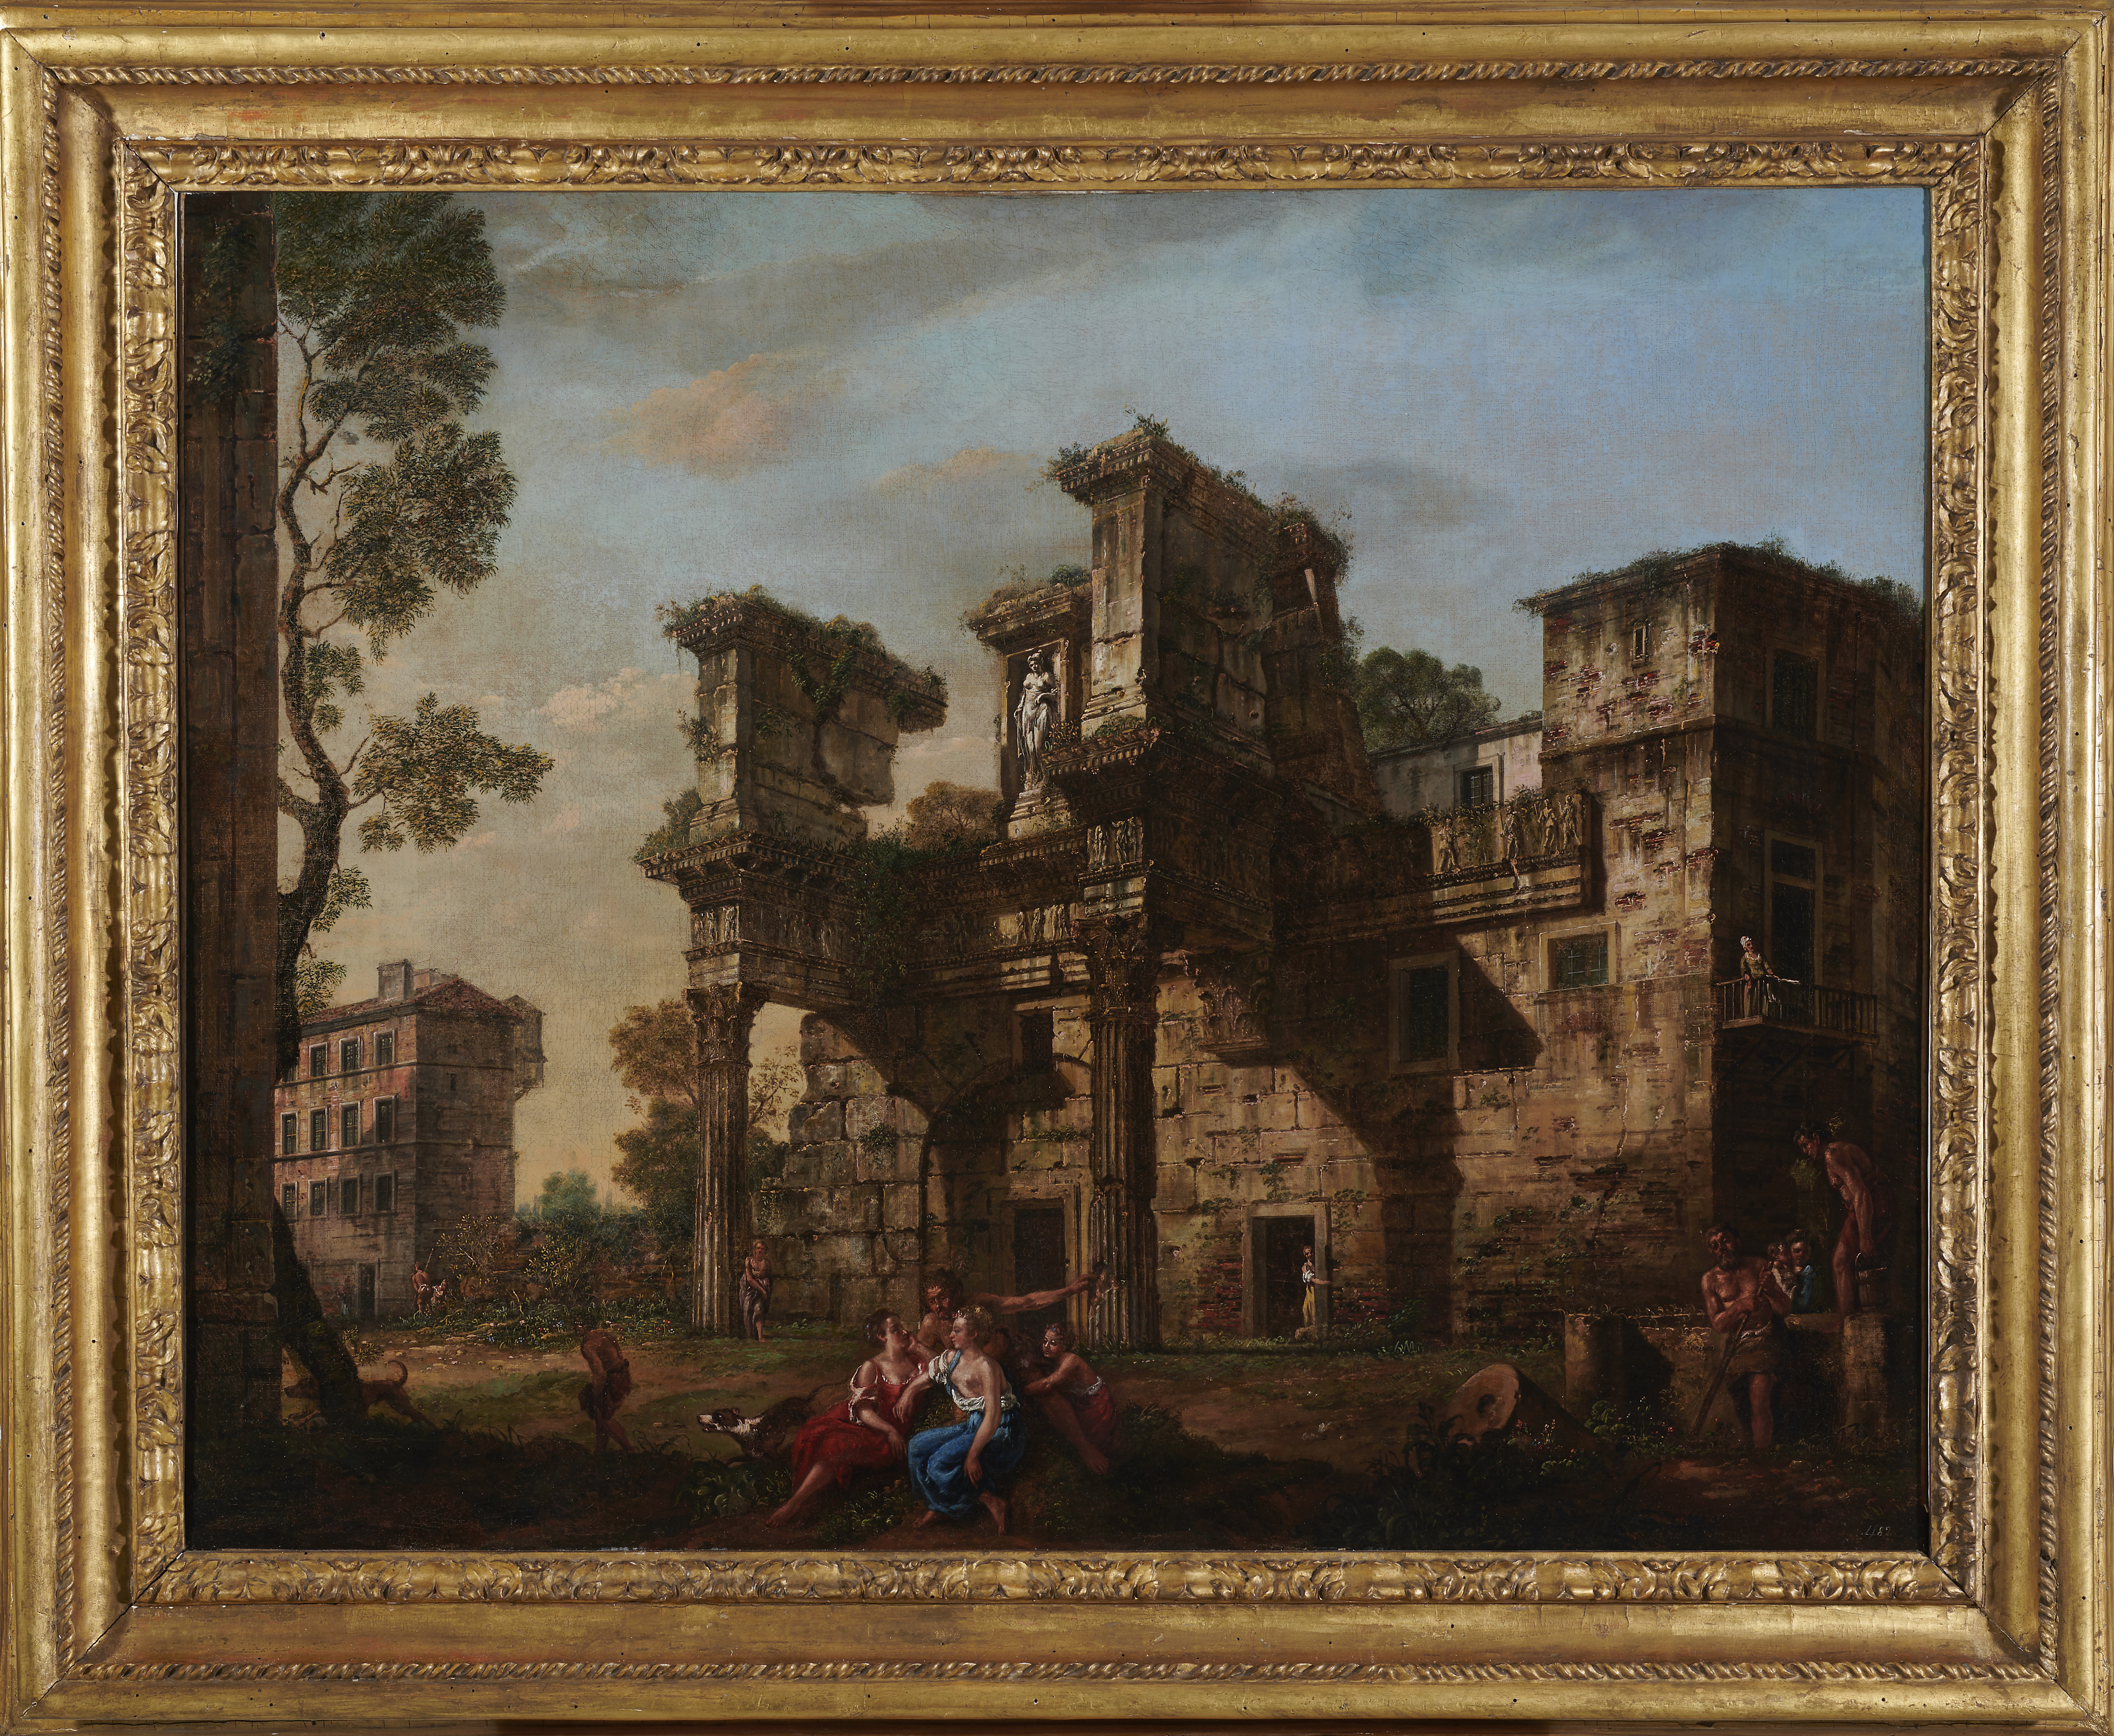 Obraz Bernarda i Lorenza Bellottów "Forum Nerwy w Rzymie", przedstawiające ruiny starożytnej rzymskiej architektury